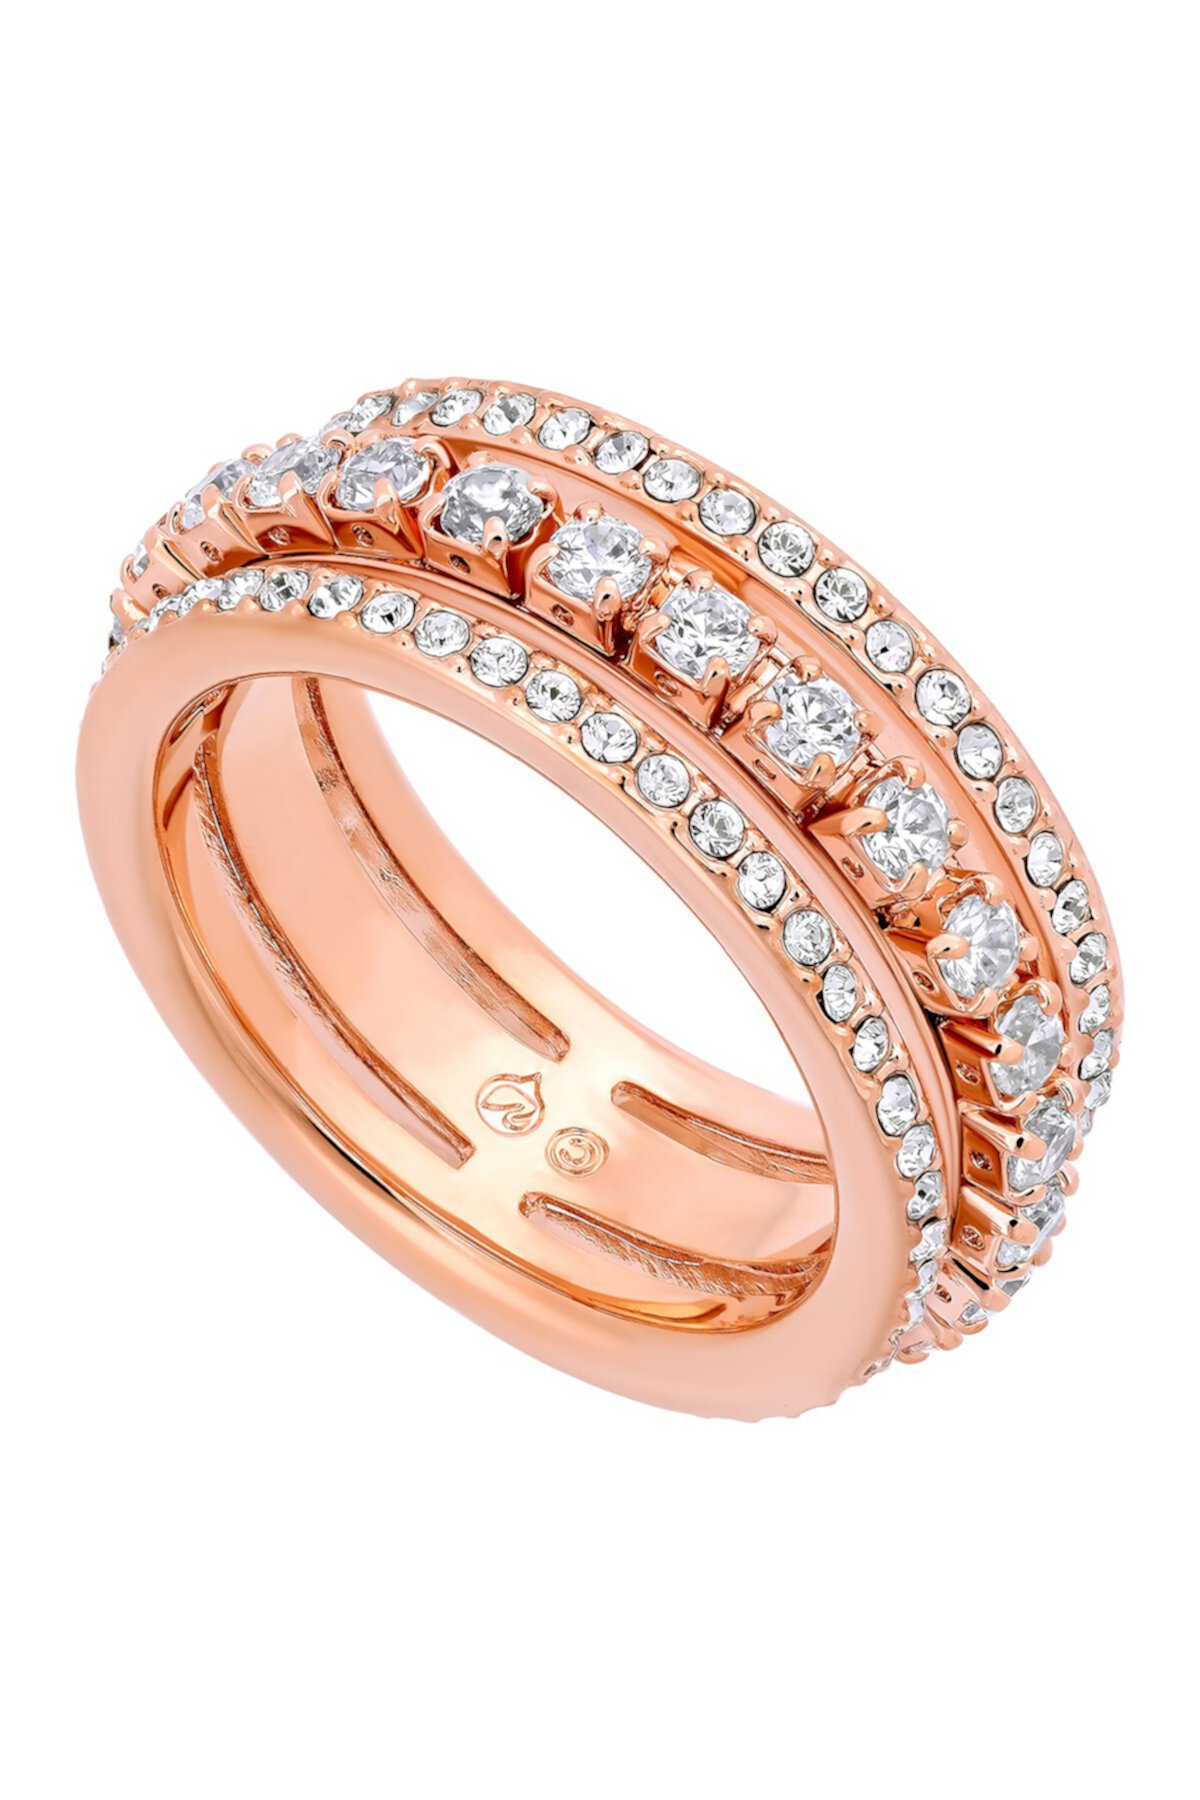 Еще одно кольцо с кристаллами Swarovski с покрытием из розового золота 18 карат - Размер 5.75 Swarovski